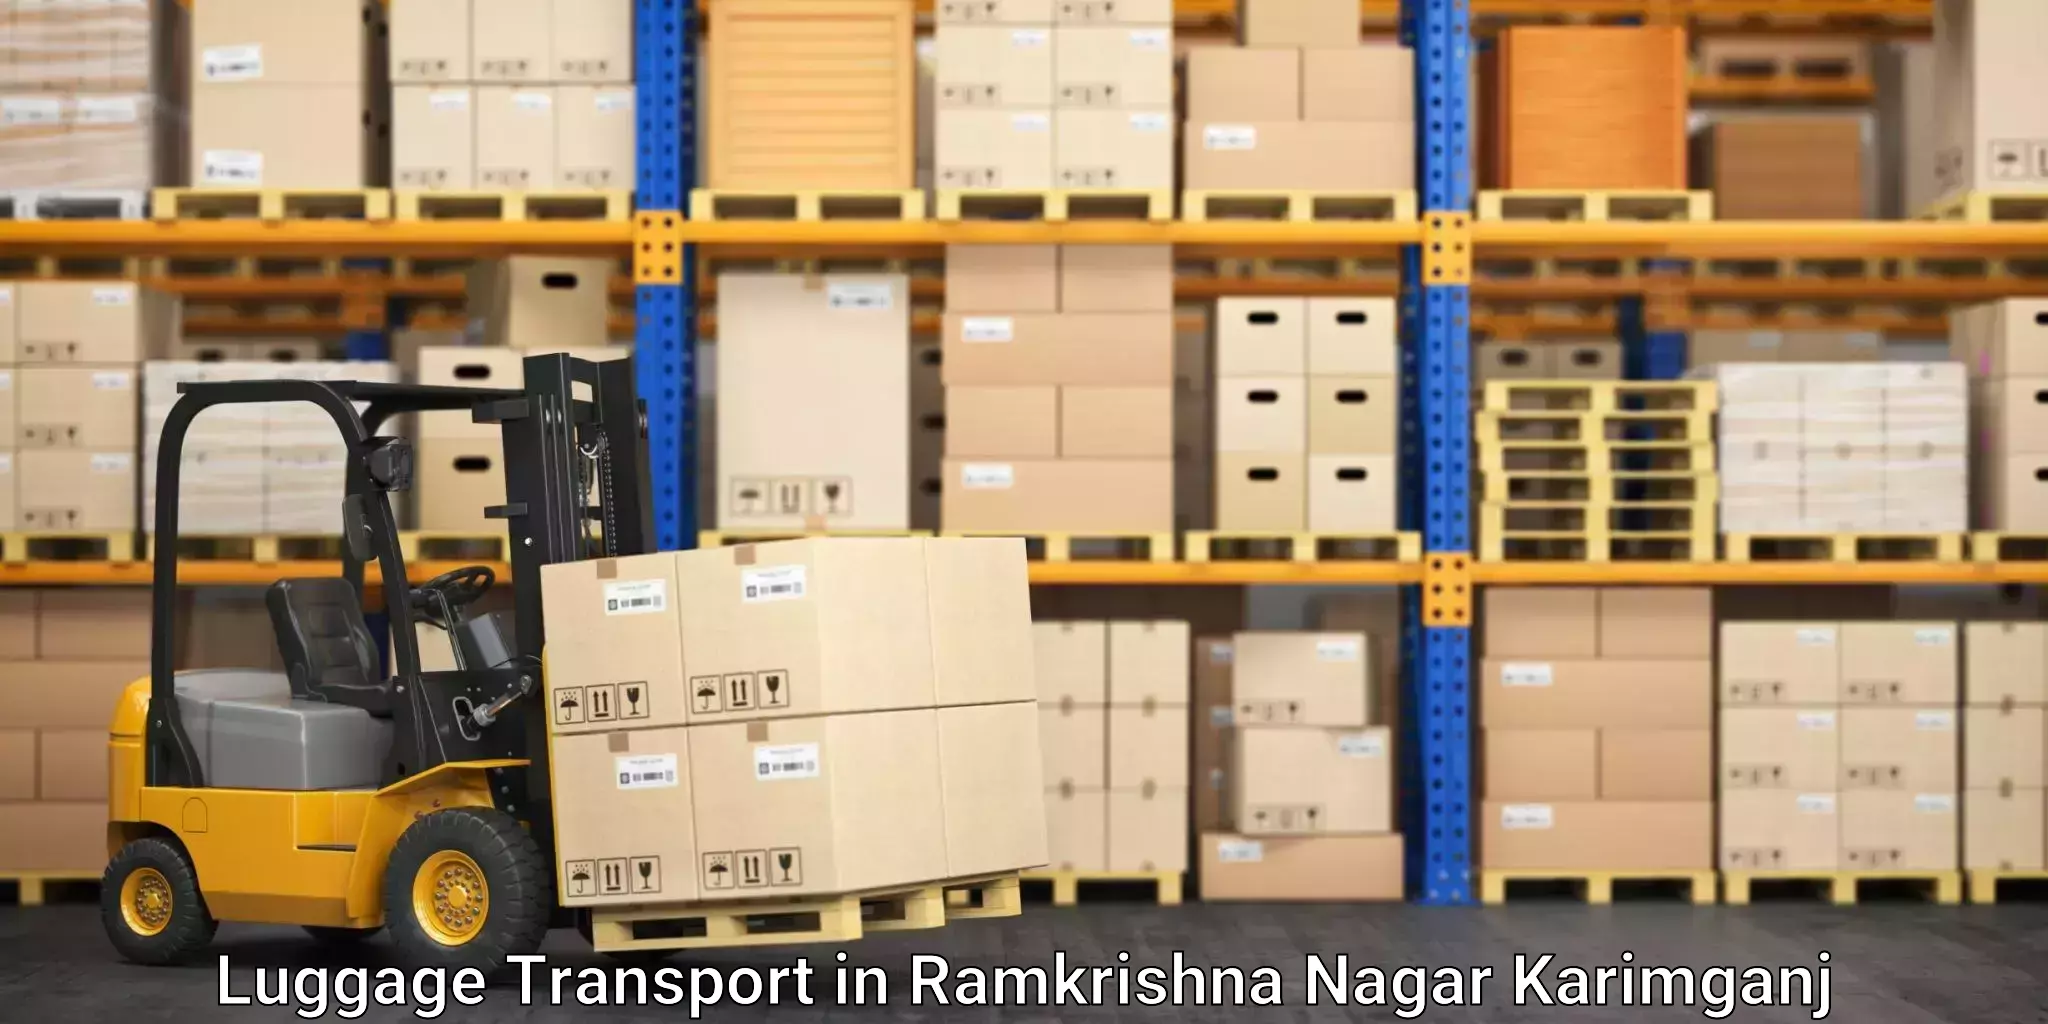 Luggage shipping solutions in Ramkrishna Nagar Karimganj